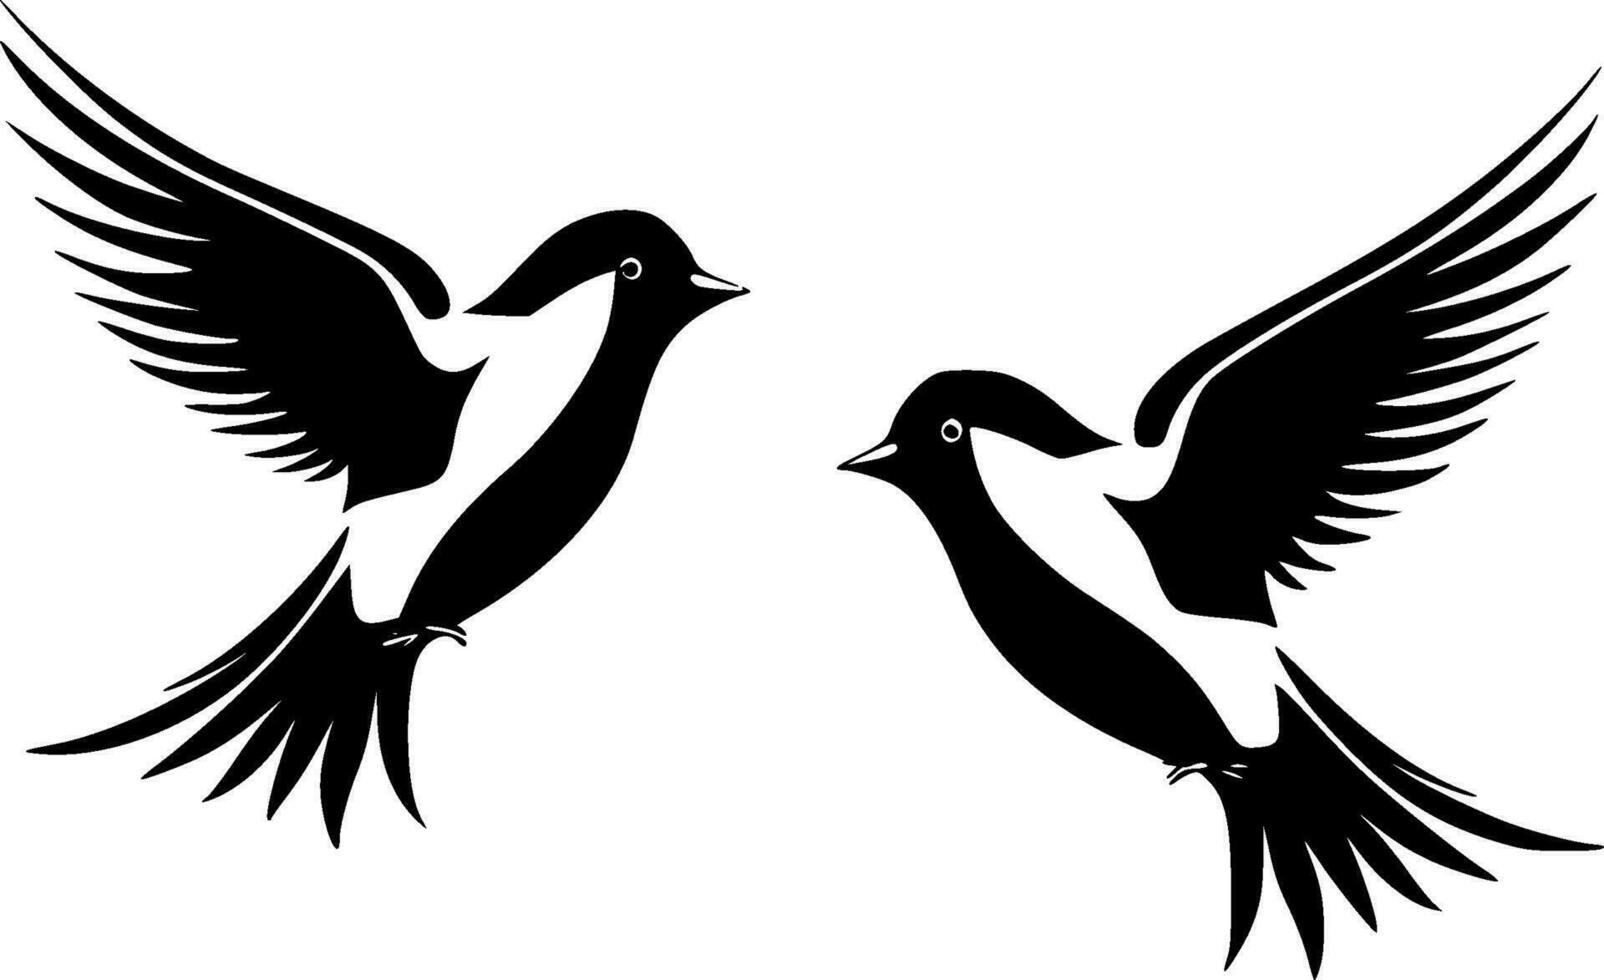 des oiseaux - haute qualité vecteur logo - vecteur illustration idéal pour T-shirt graphique